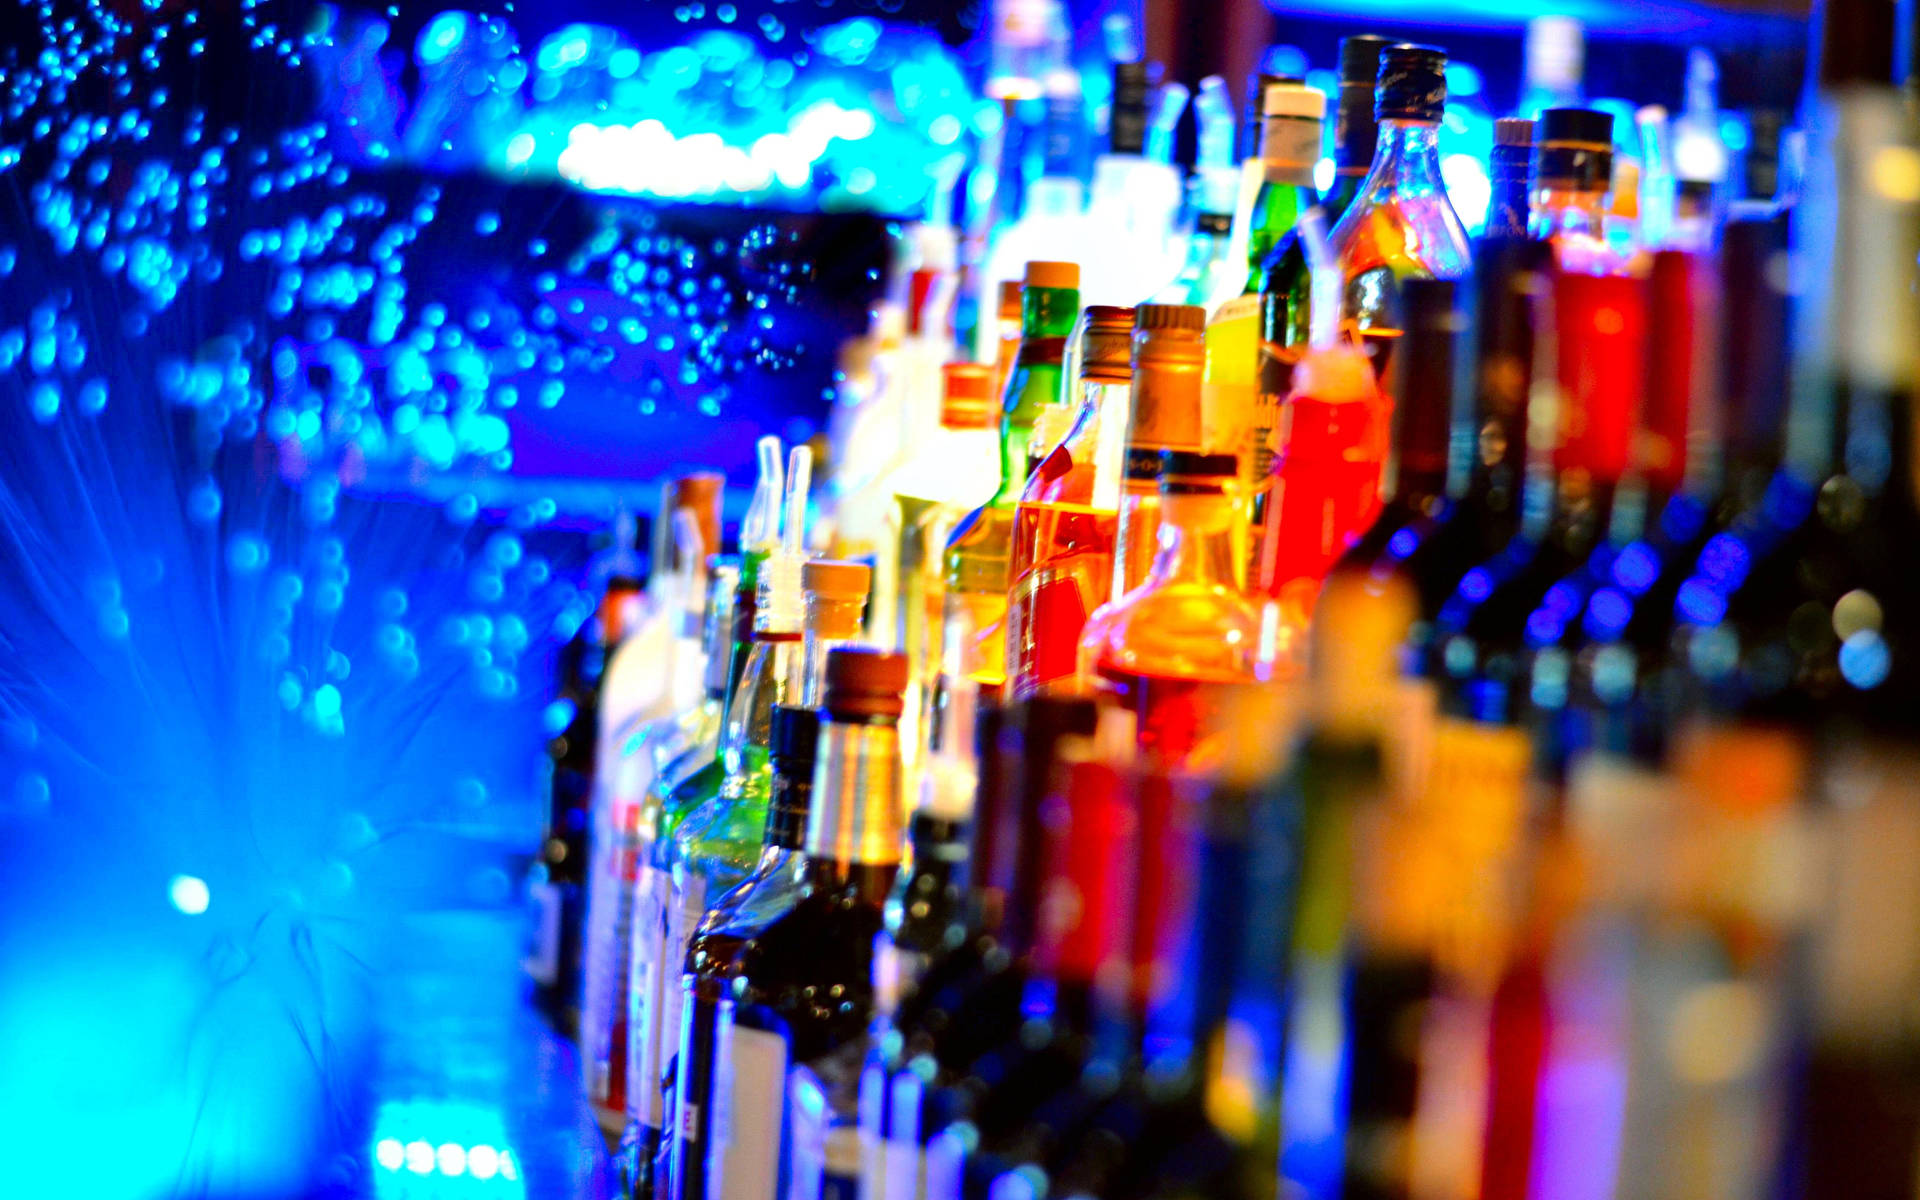 alcohol shots wallpaper